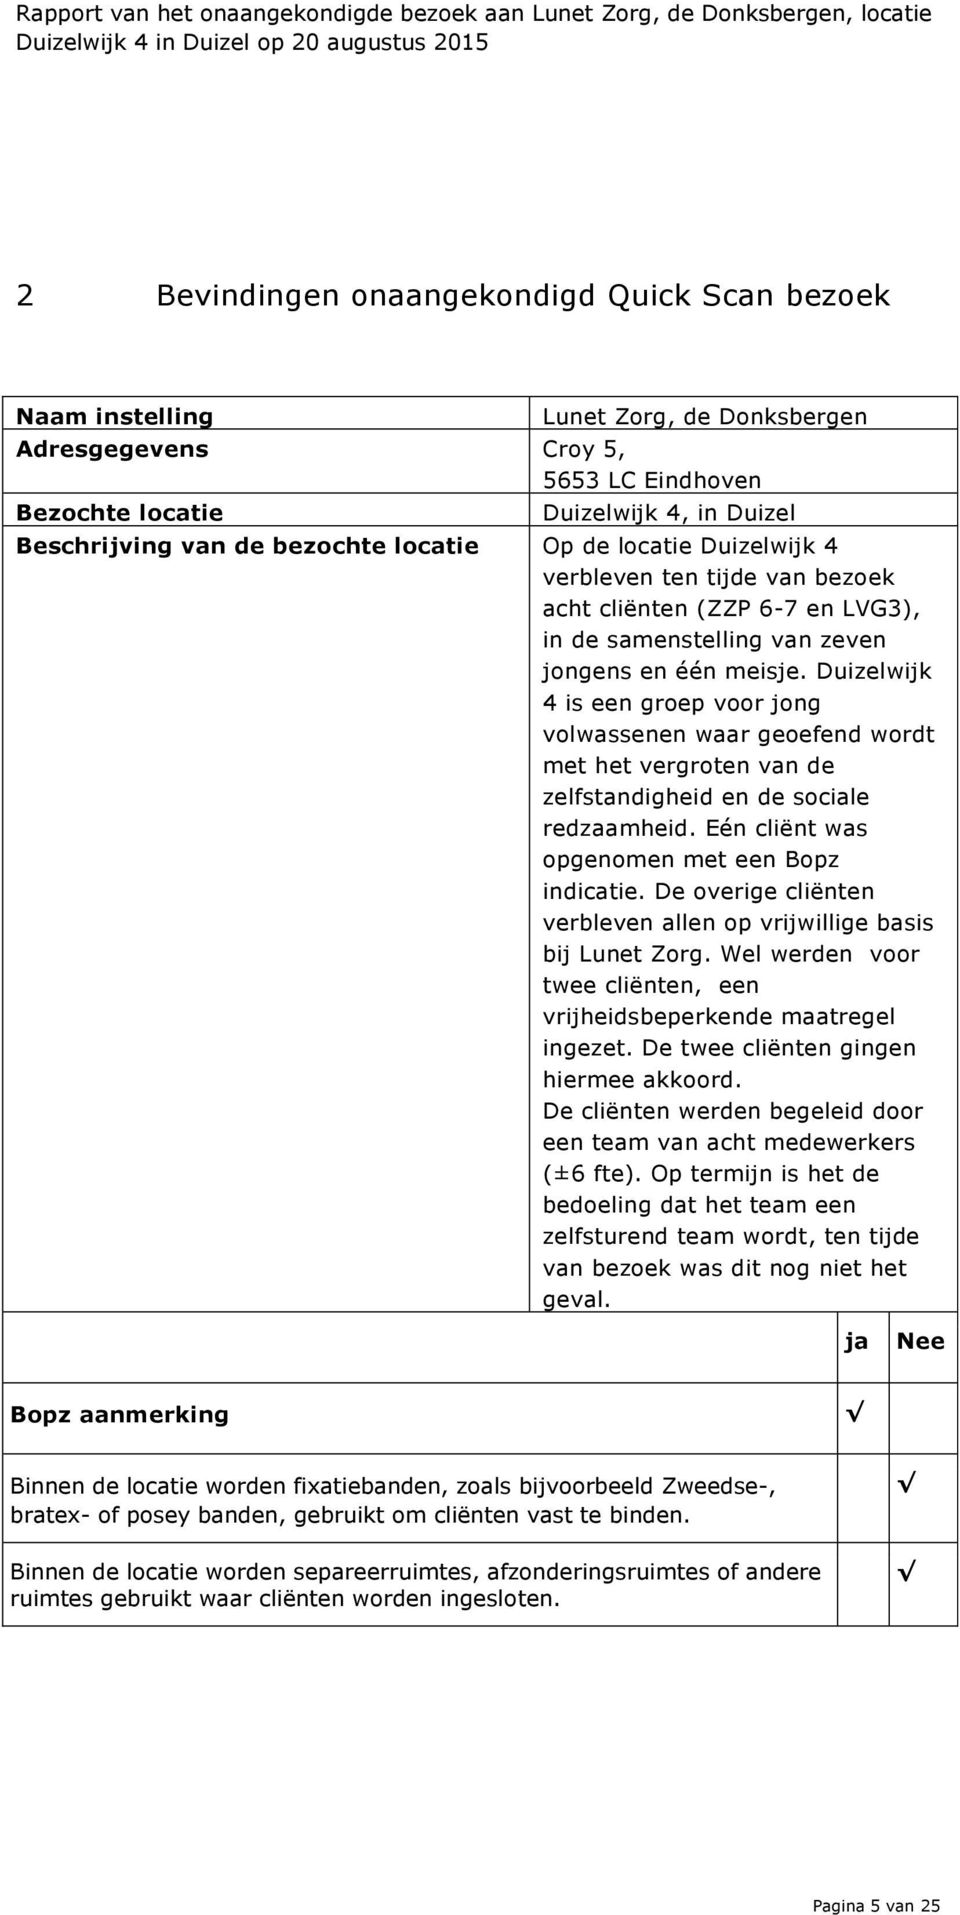 Duizelwijk 4 is een groep voor jong volwassenen waar geoefend wordt met het vergroten van de zelfstandigheid en de sociale redzaamheid. Eén cliënt was opgenomen met een Bopz indicatie.